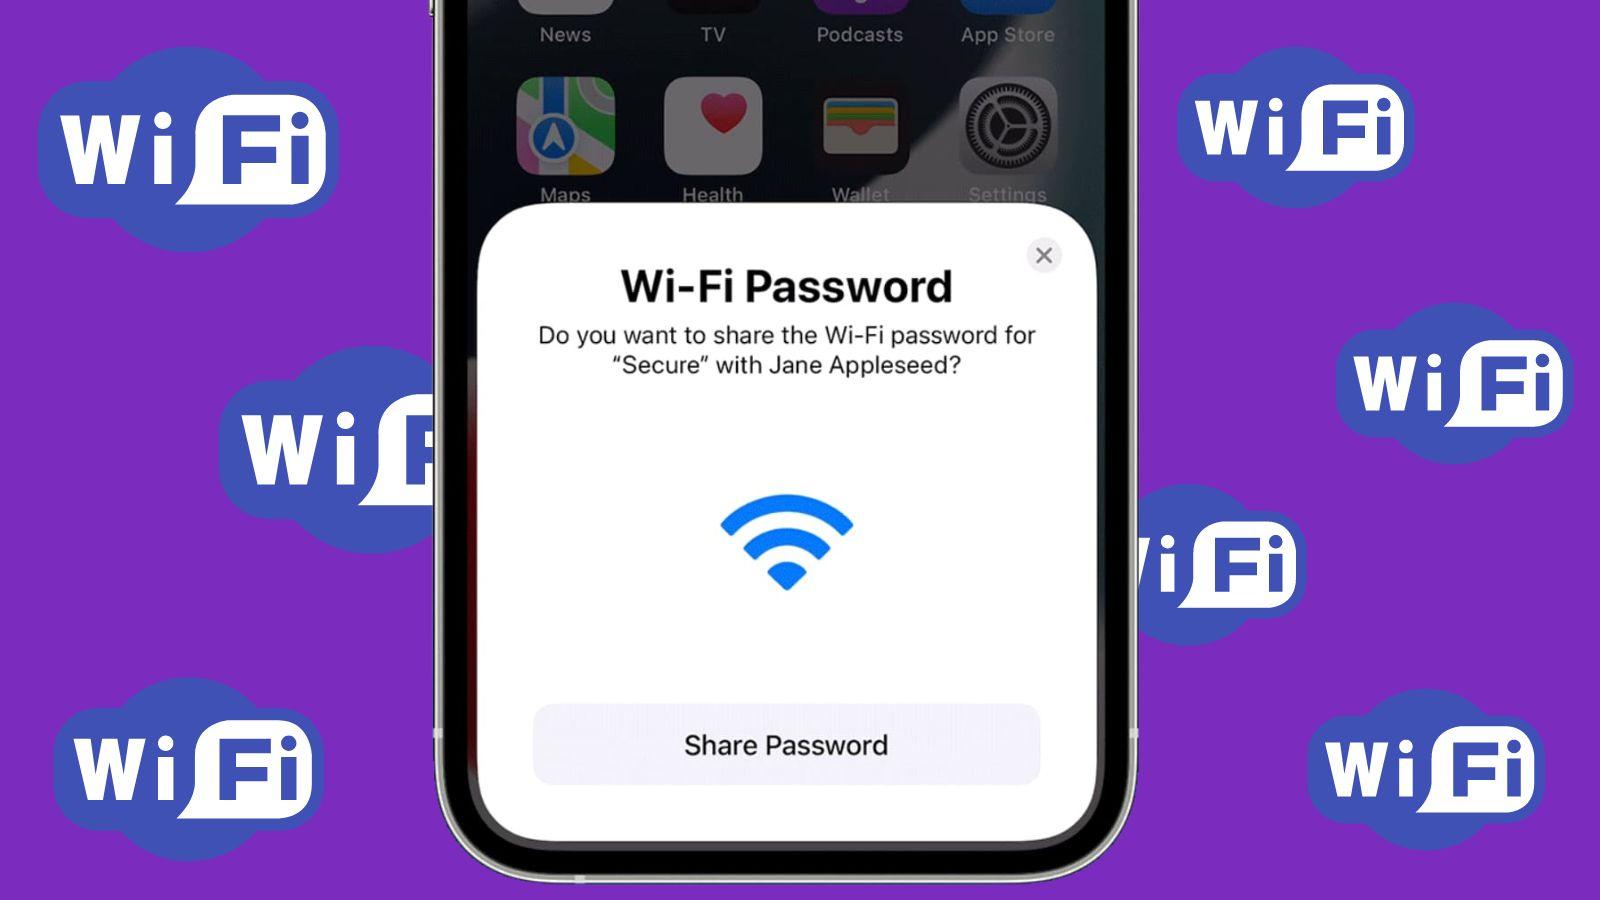 Jak snadno a rychle zjistit heslo k Wi-Fi v iPhonu? Známe řešení tohoto problému